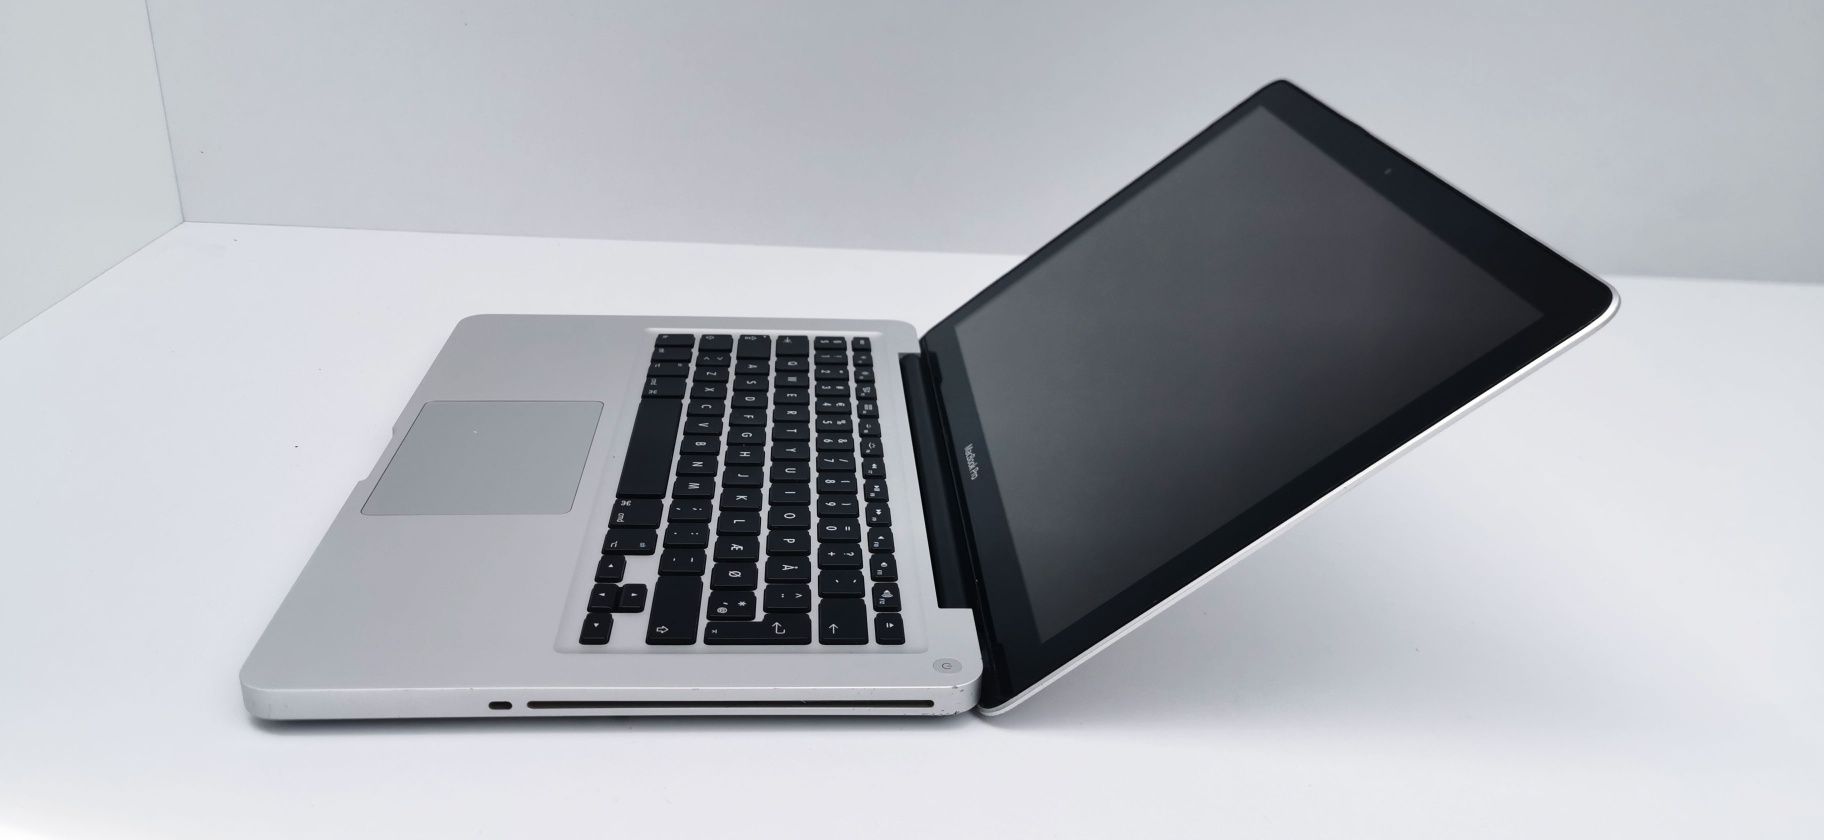 Apple MacBook Pro A1278 Impecabil cu Procesor 256 GB SSD si 8 GB RAM